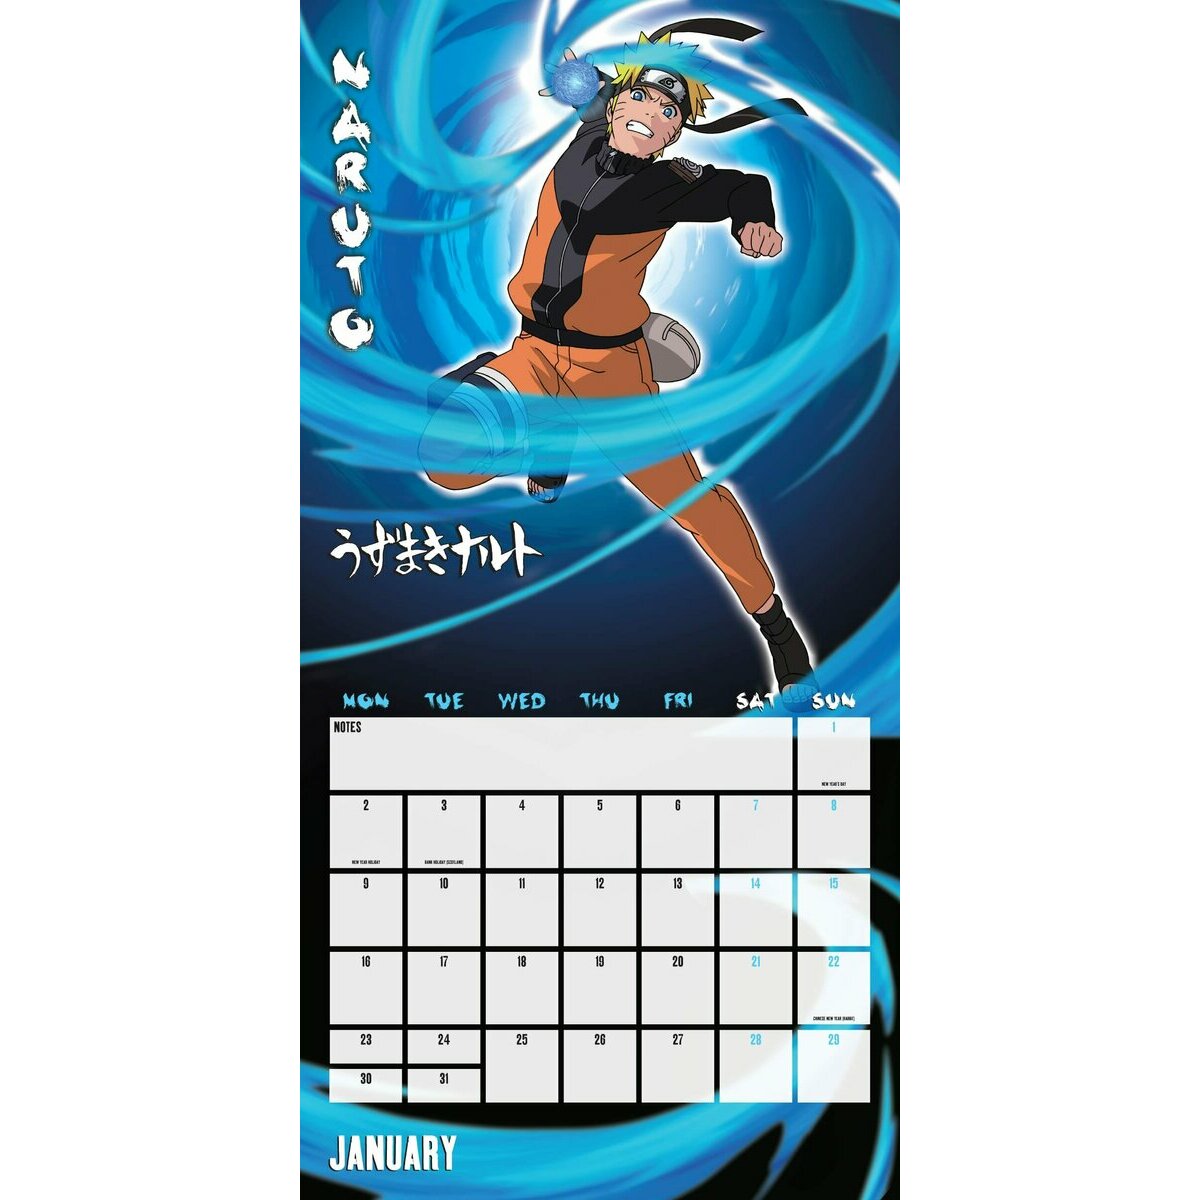 Naruto Shippuden - Calendrier almanach (Larousse)